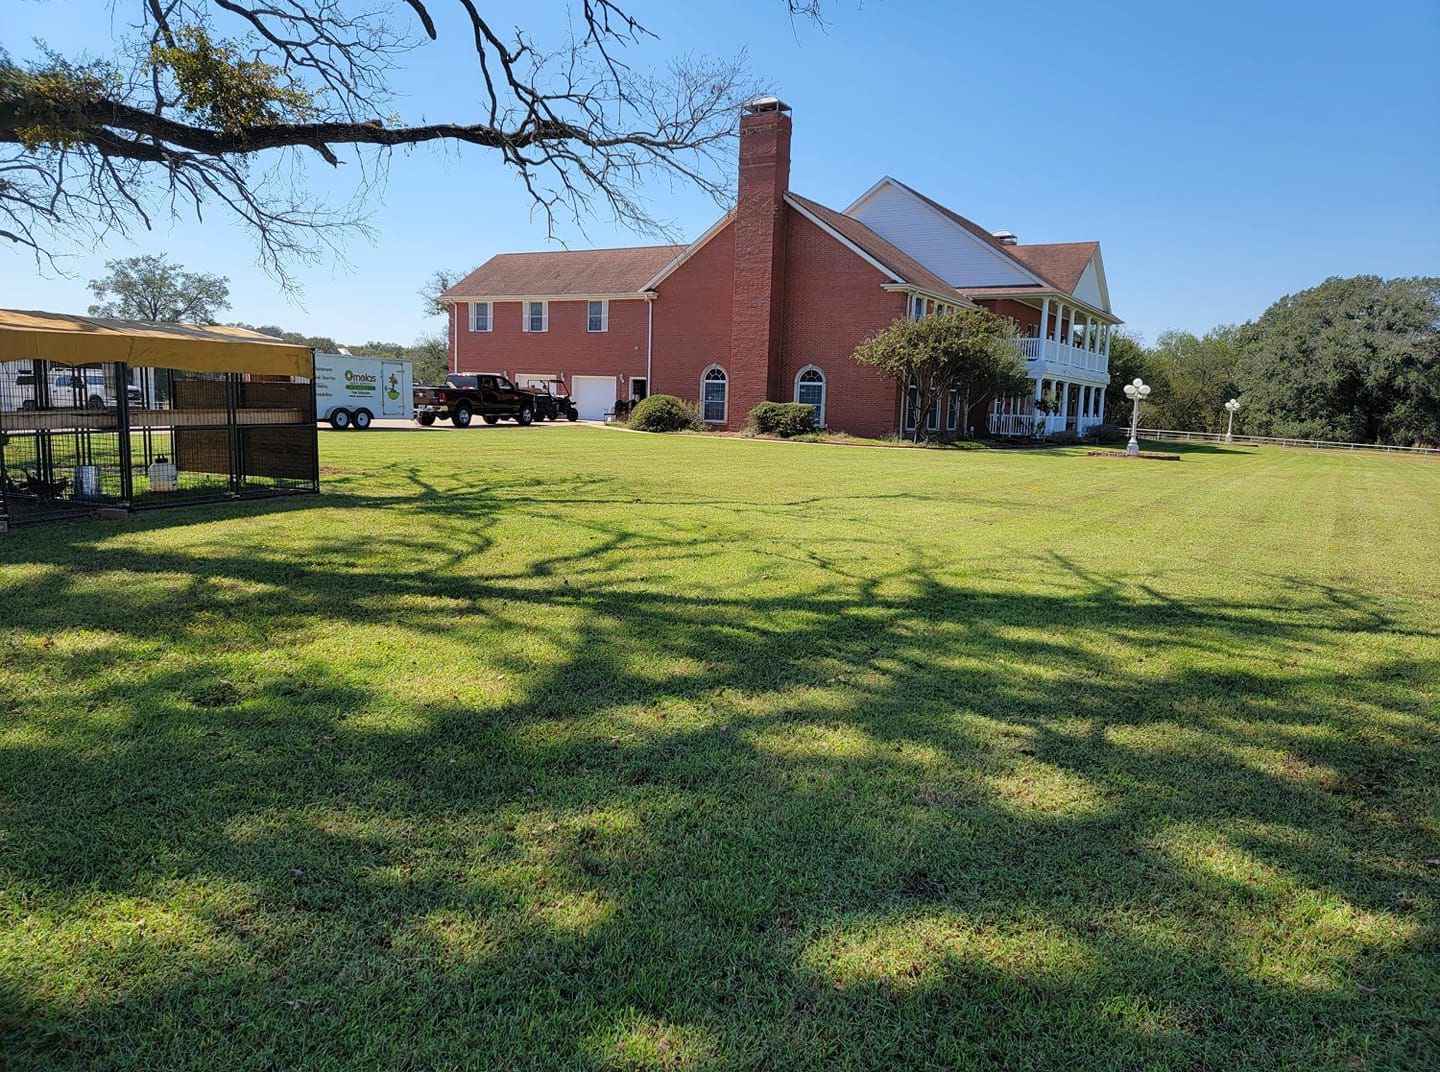 Lawn Care for Ornelas Lawn Service in Lone Oak, Texas